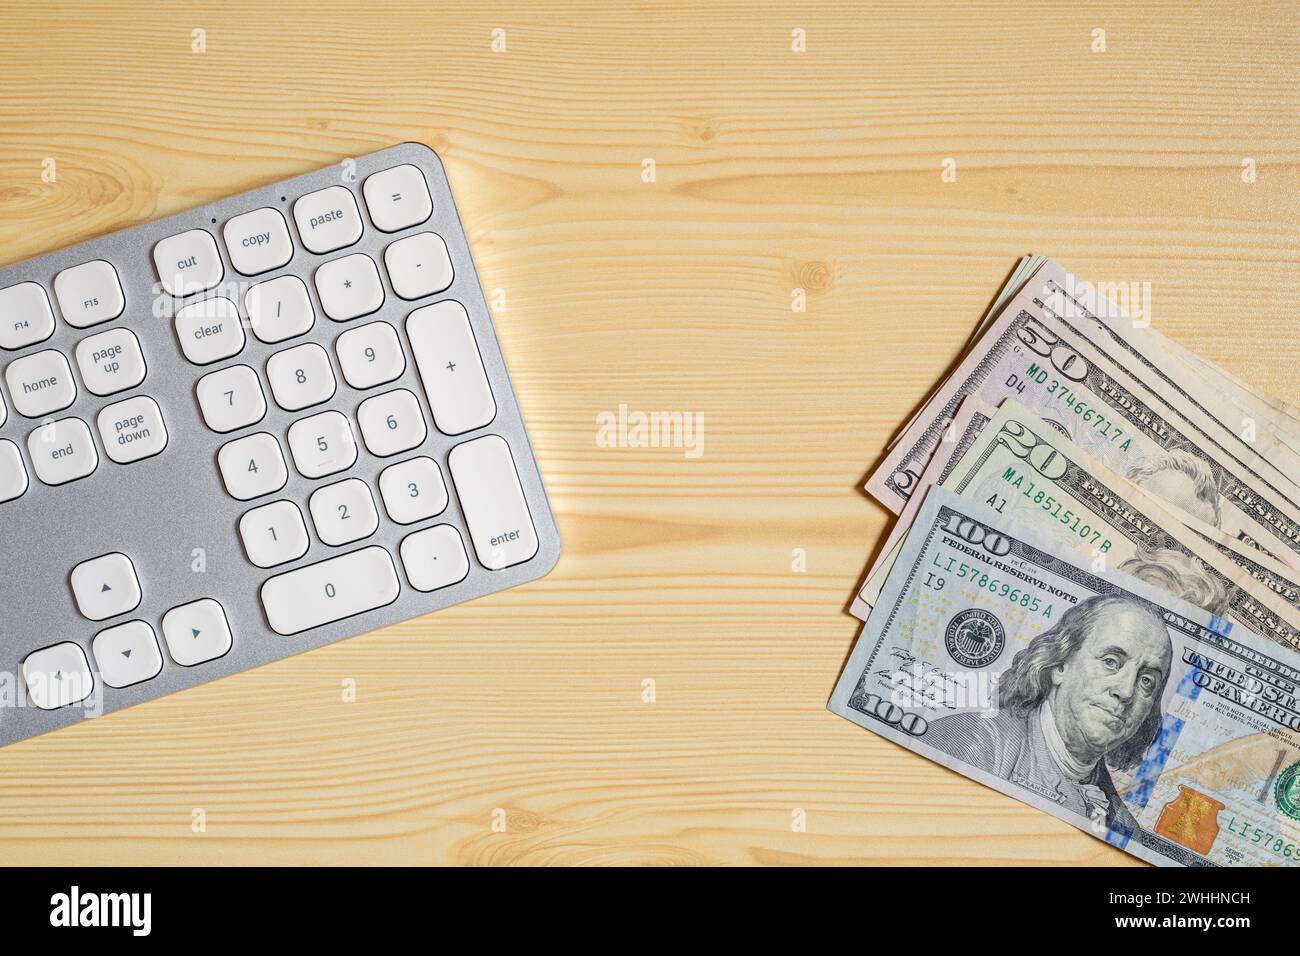 Clavier d'ordinateur de bureau et billets de banque en dollars américains sur le bureau, vue de dessus Banque D'Images